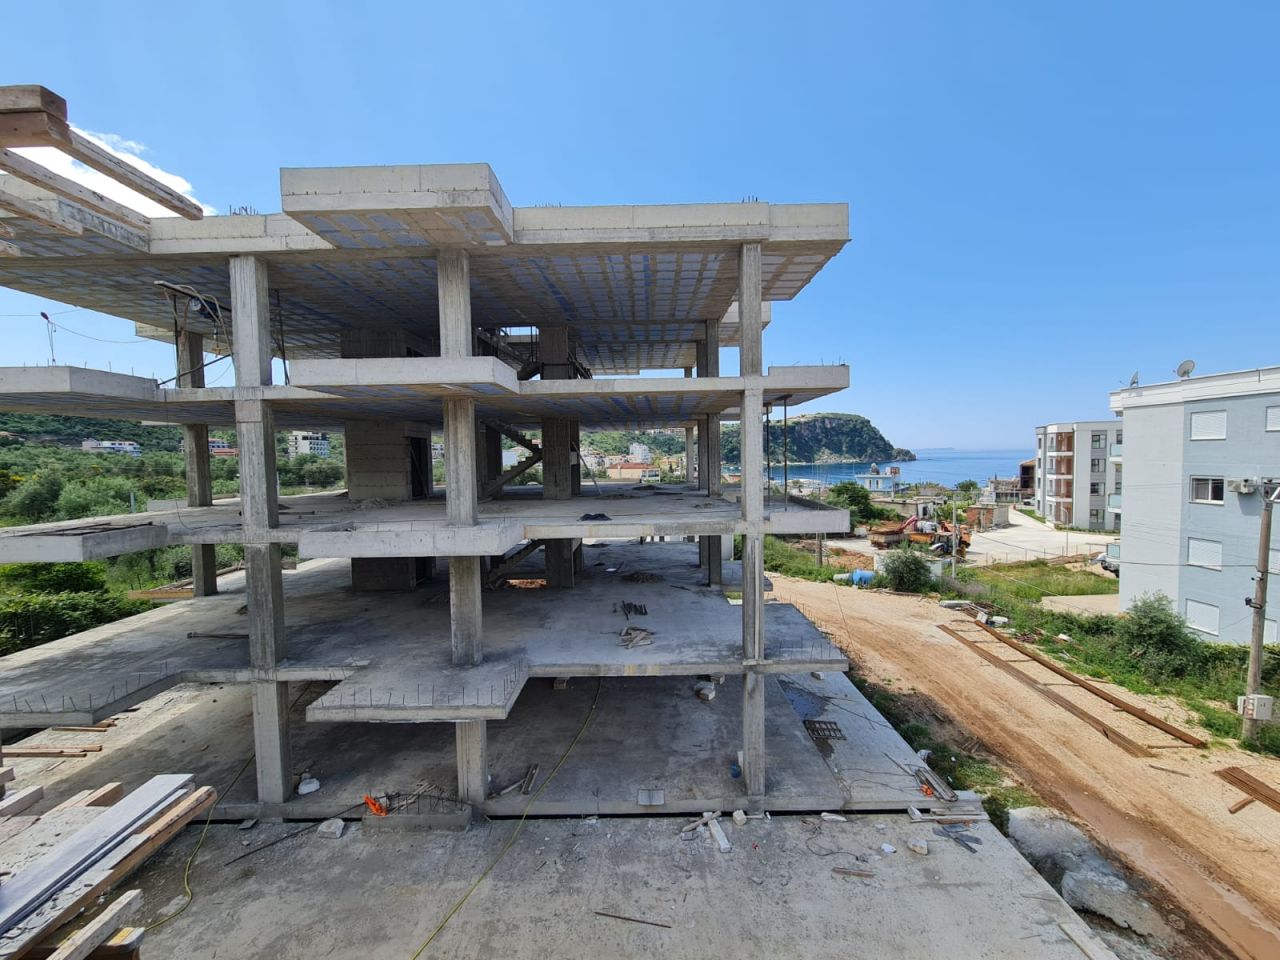  Apartment For Sale In Himara Albania